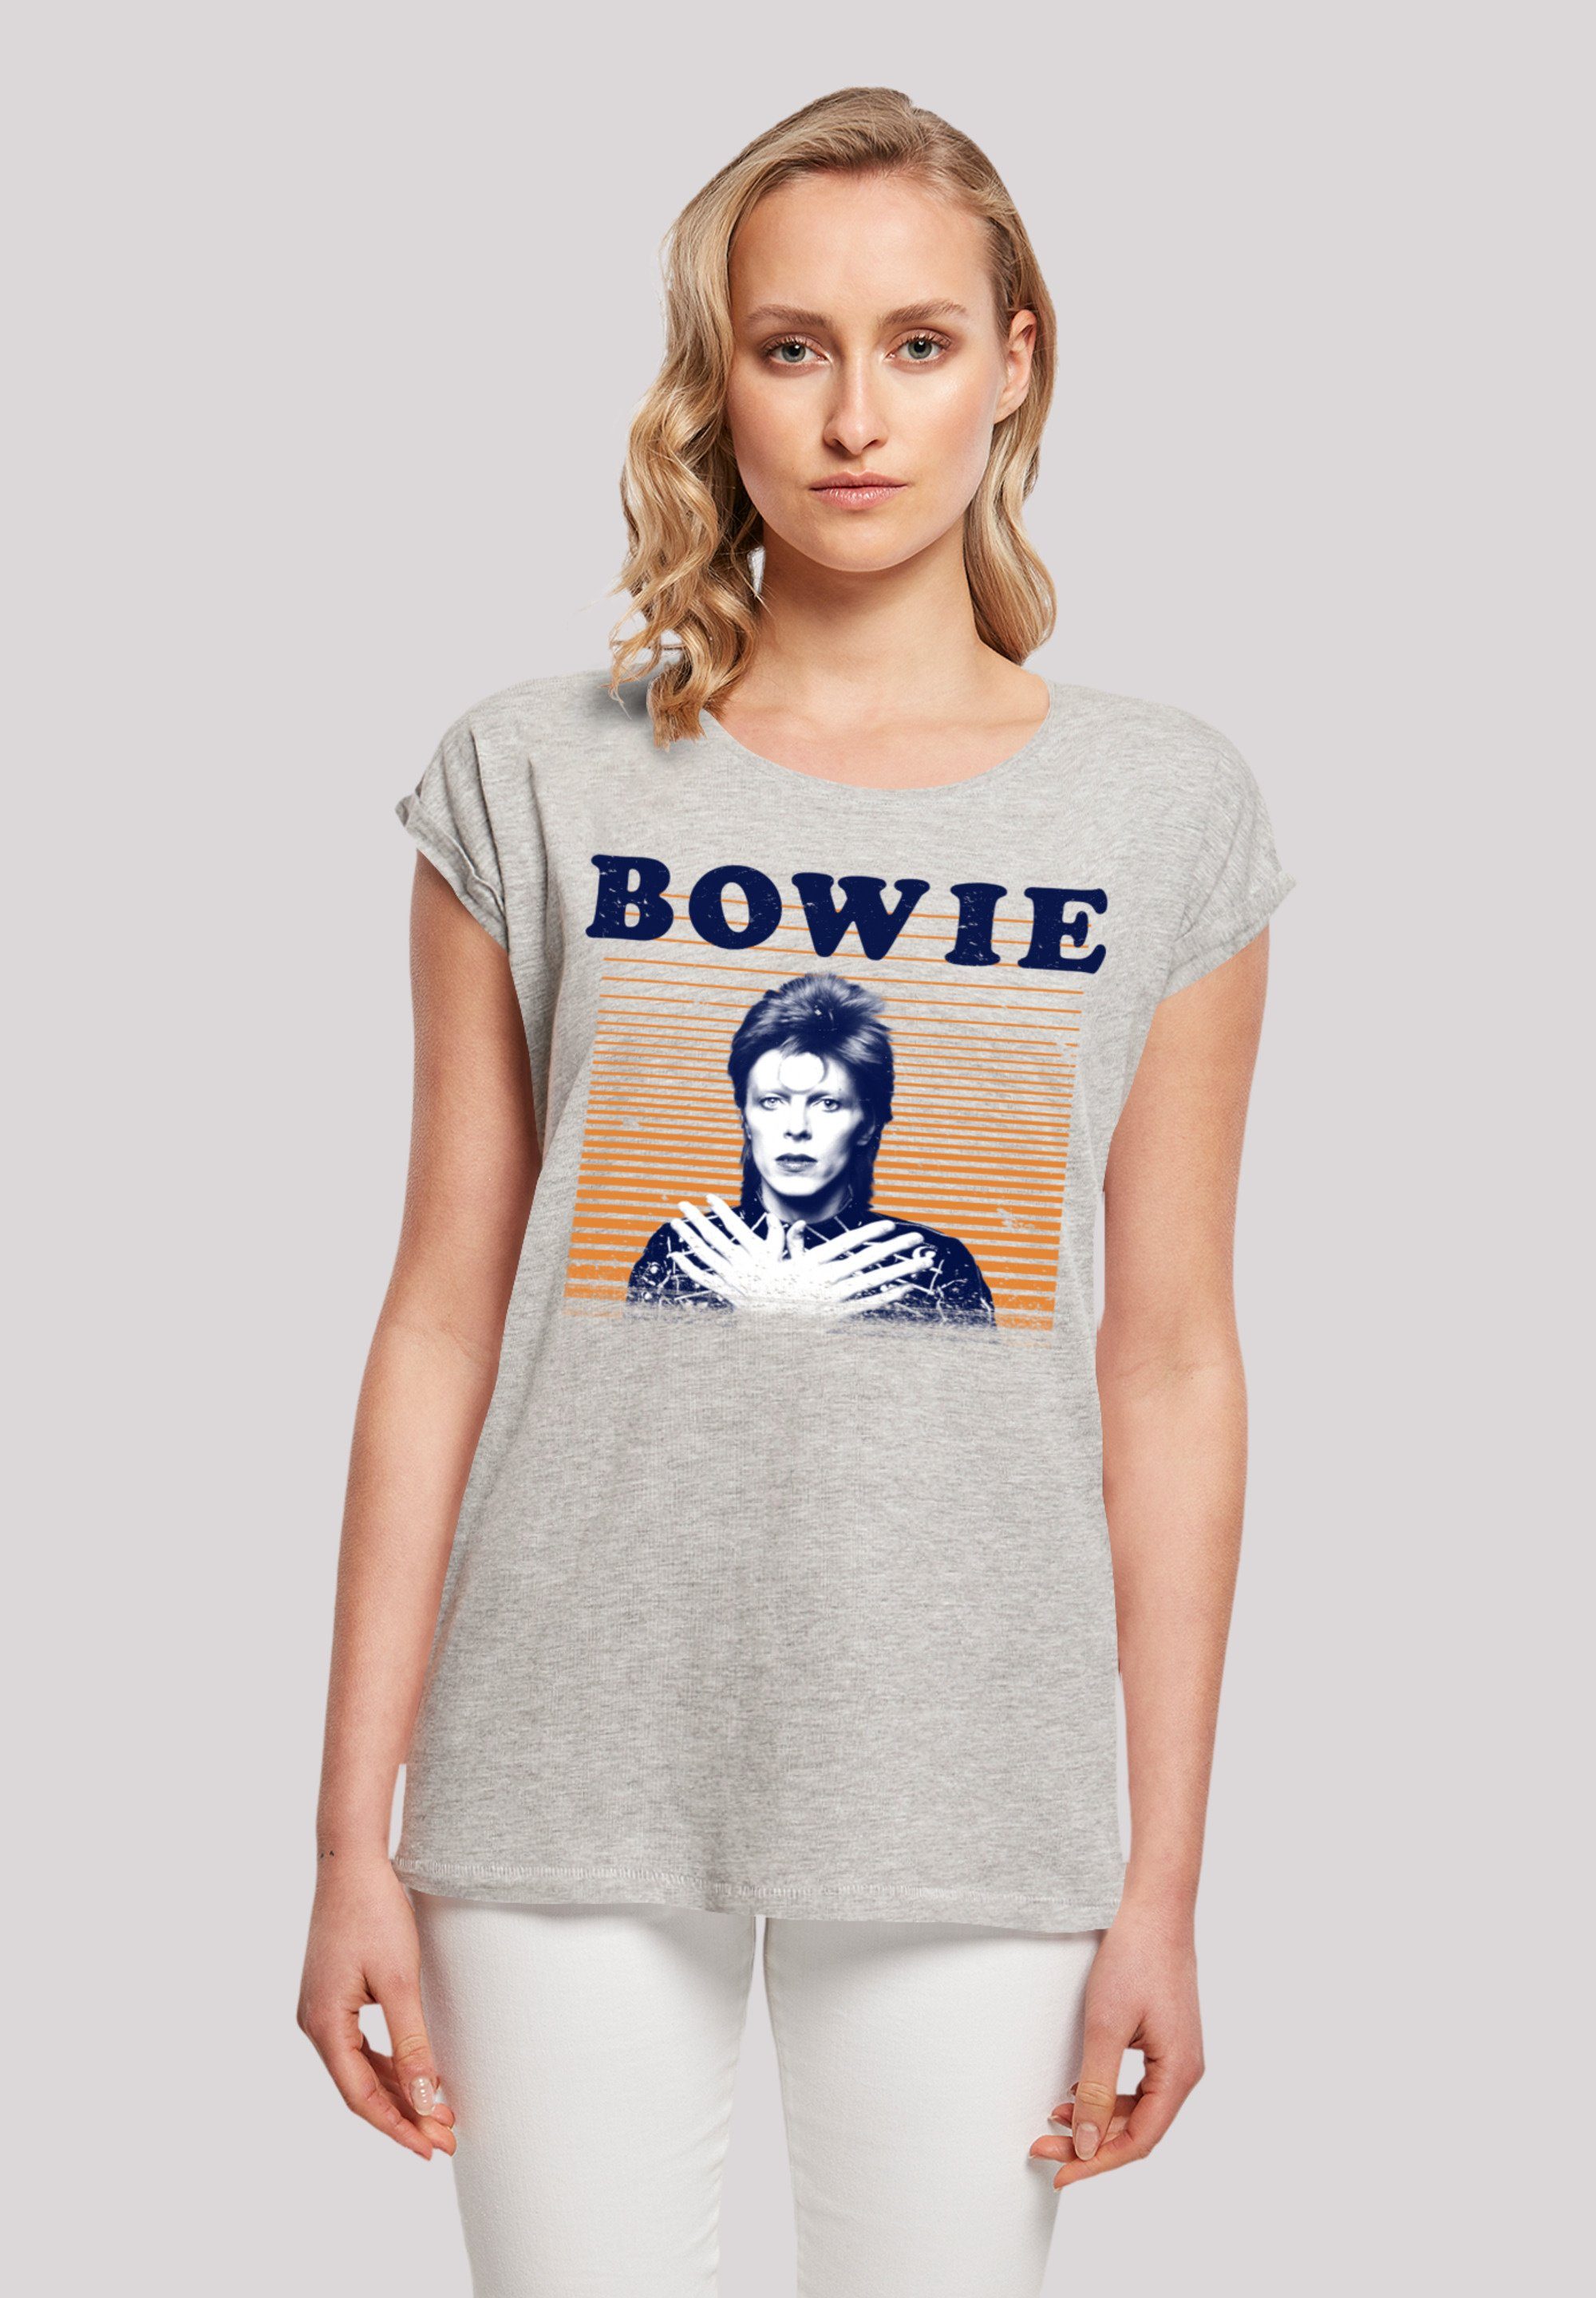 Größe cm M ist trägt Orange Das Print, David F4NT4STIC 170 Bowie T-Shirt Model und groß Stripes